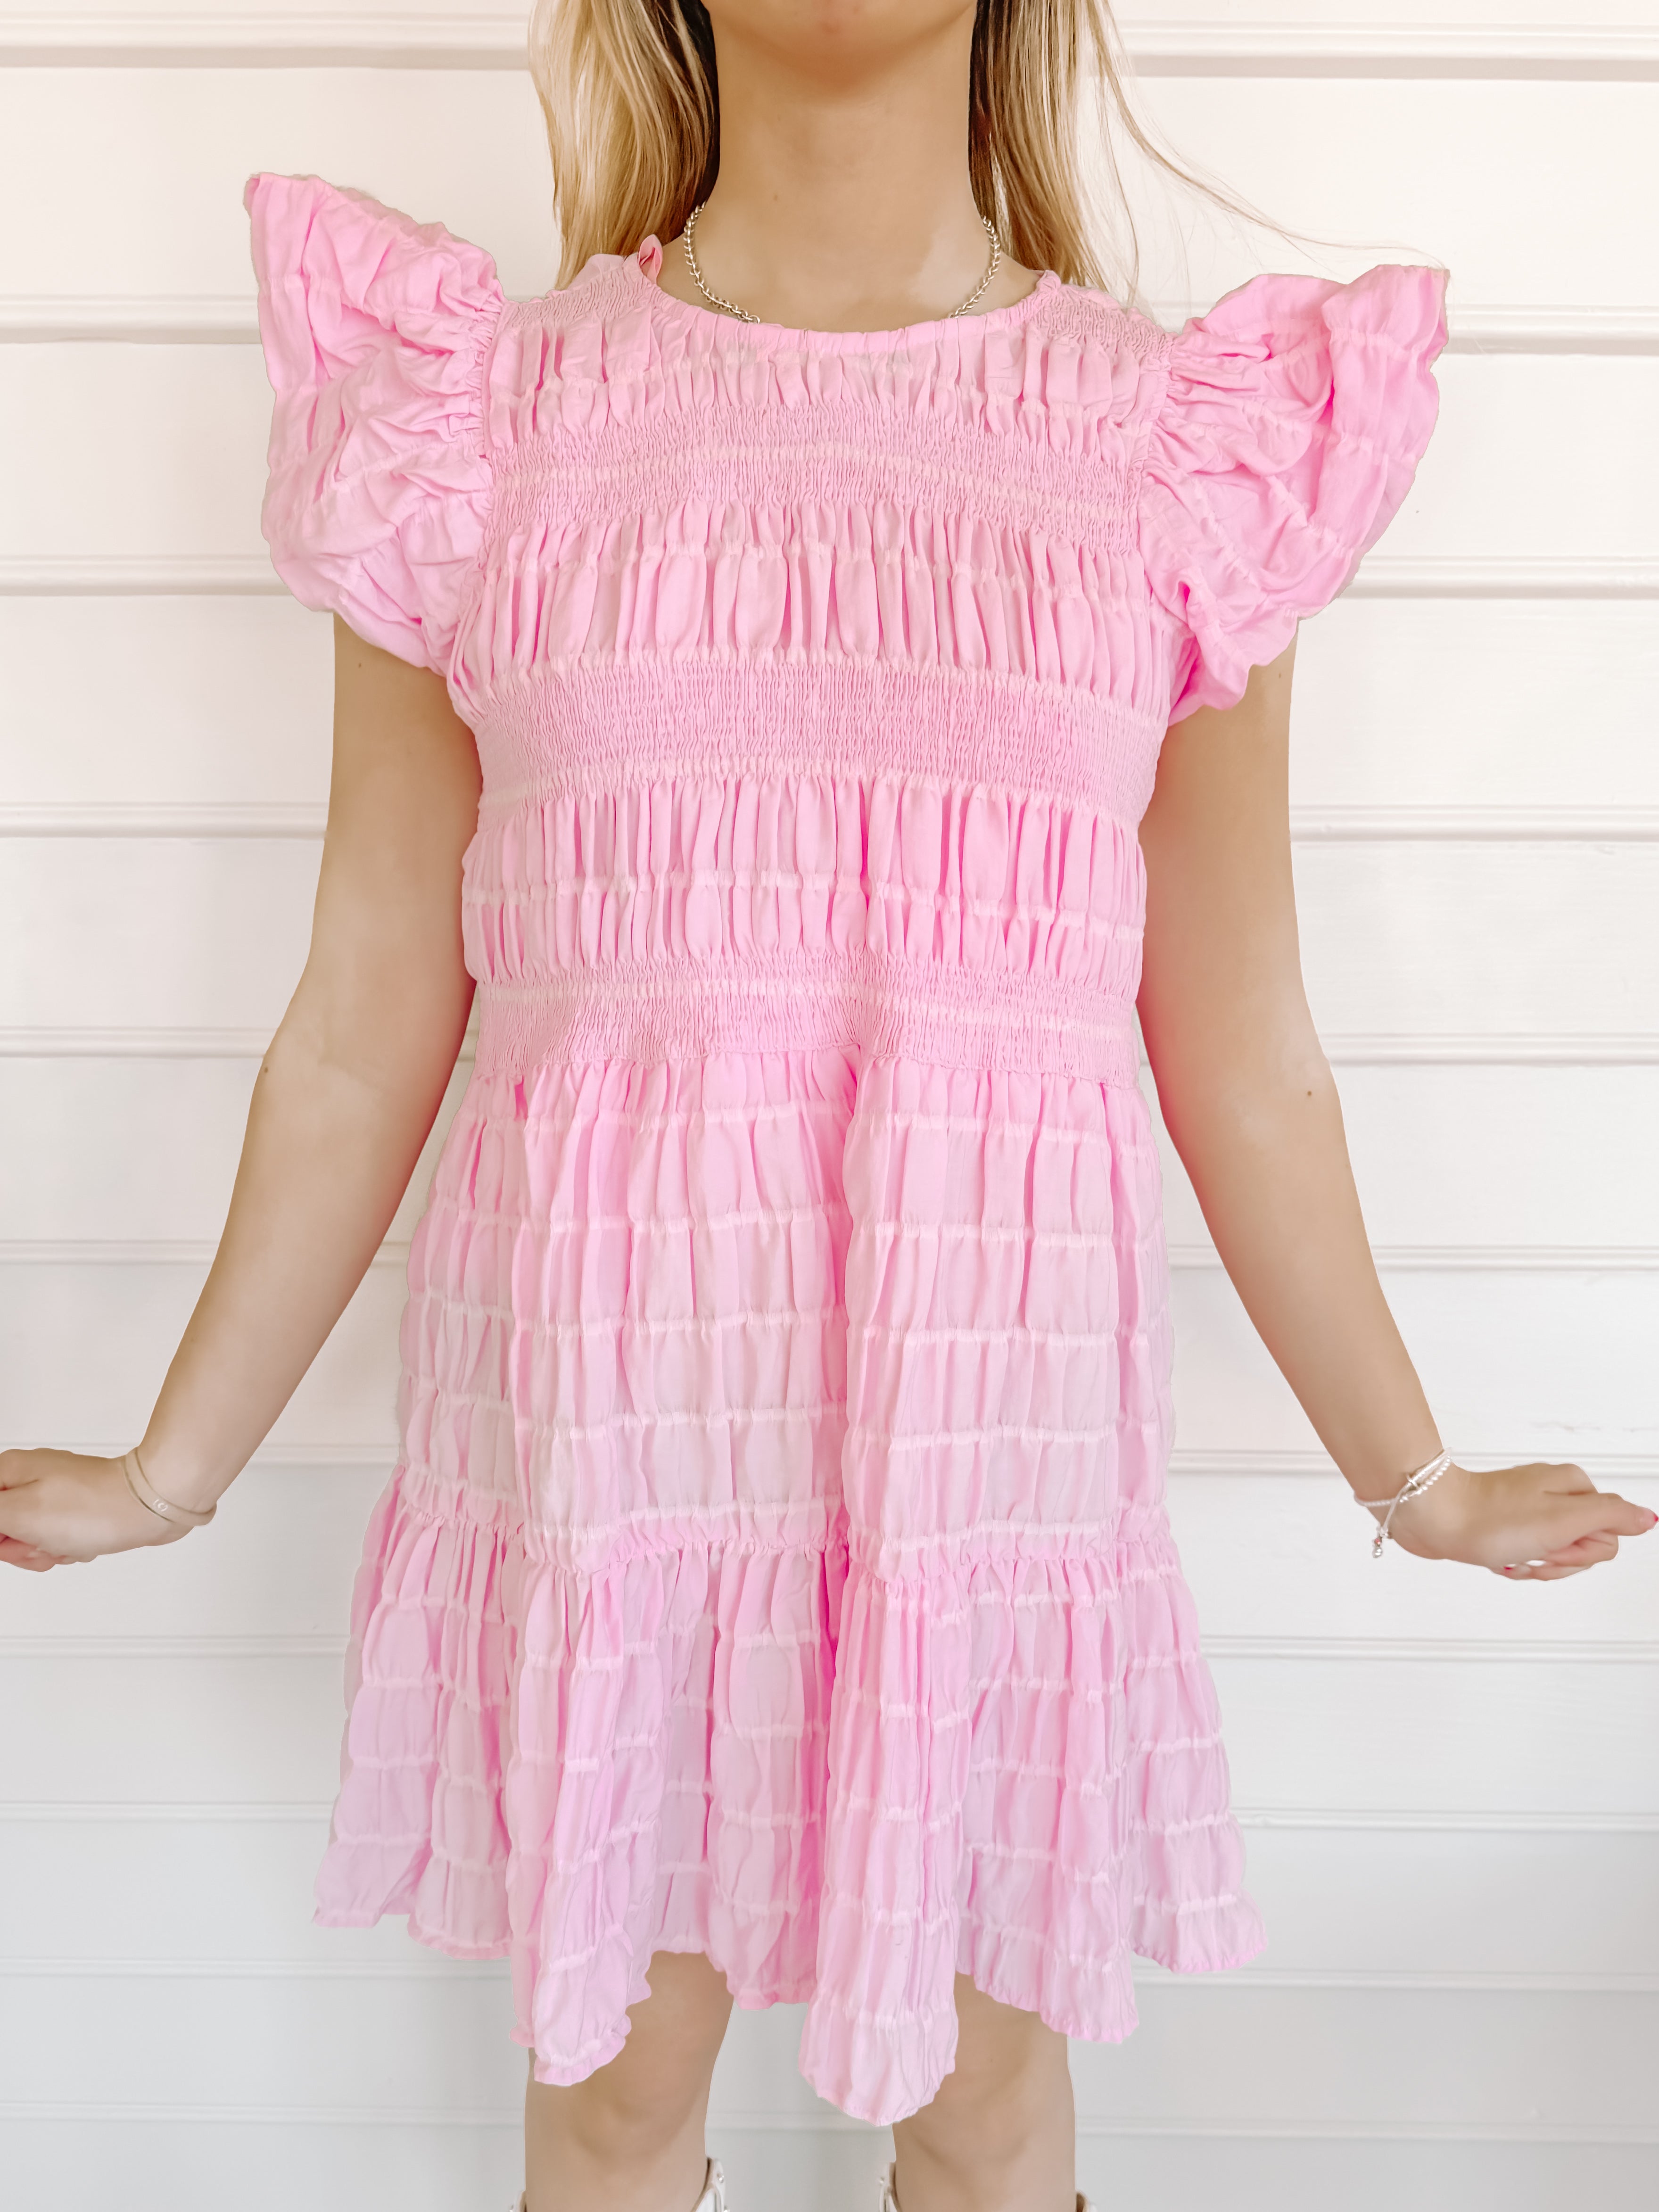 Sweet Like Candy Smocked Pink Dress | sassyshortcake.com | Sassy Shortcake